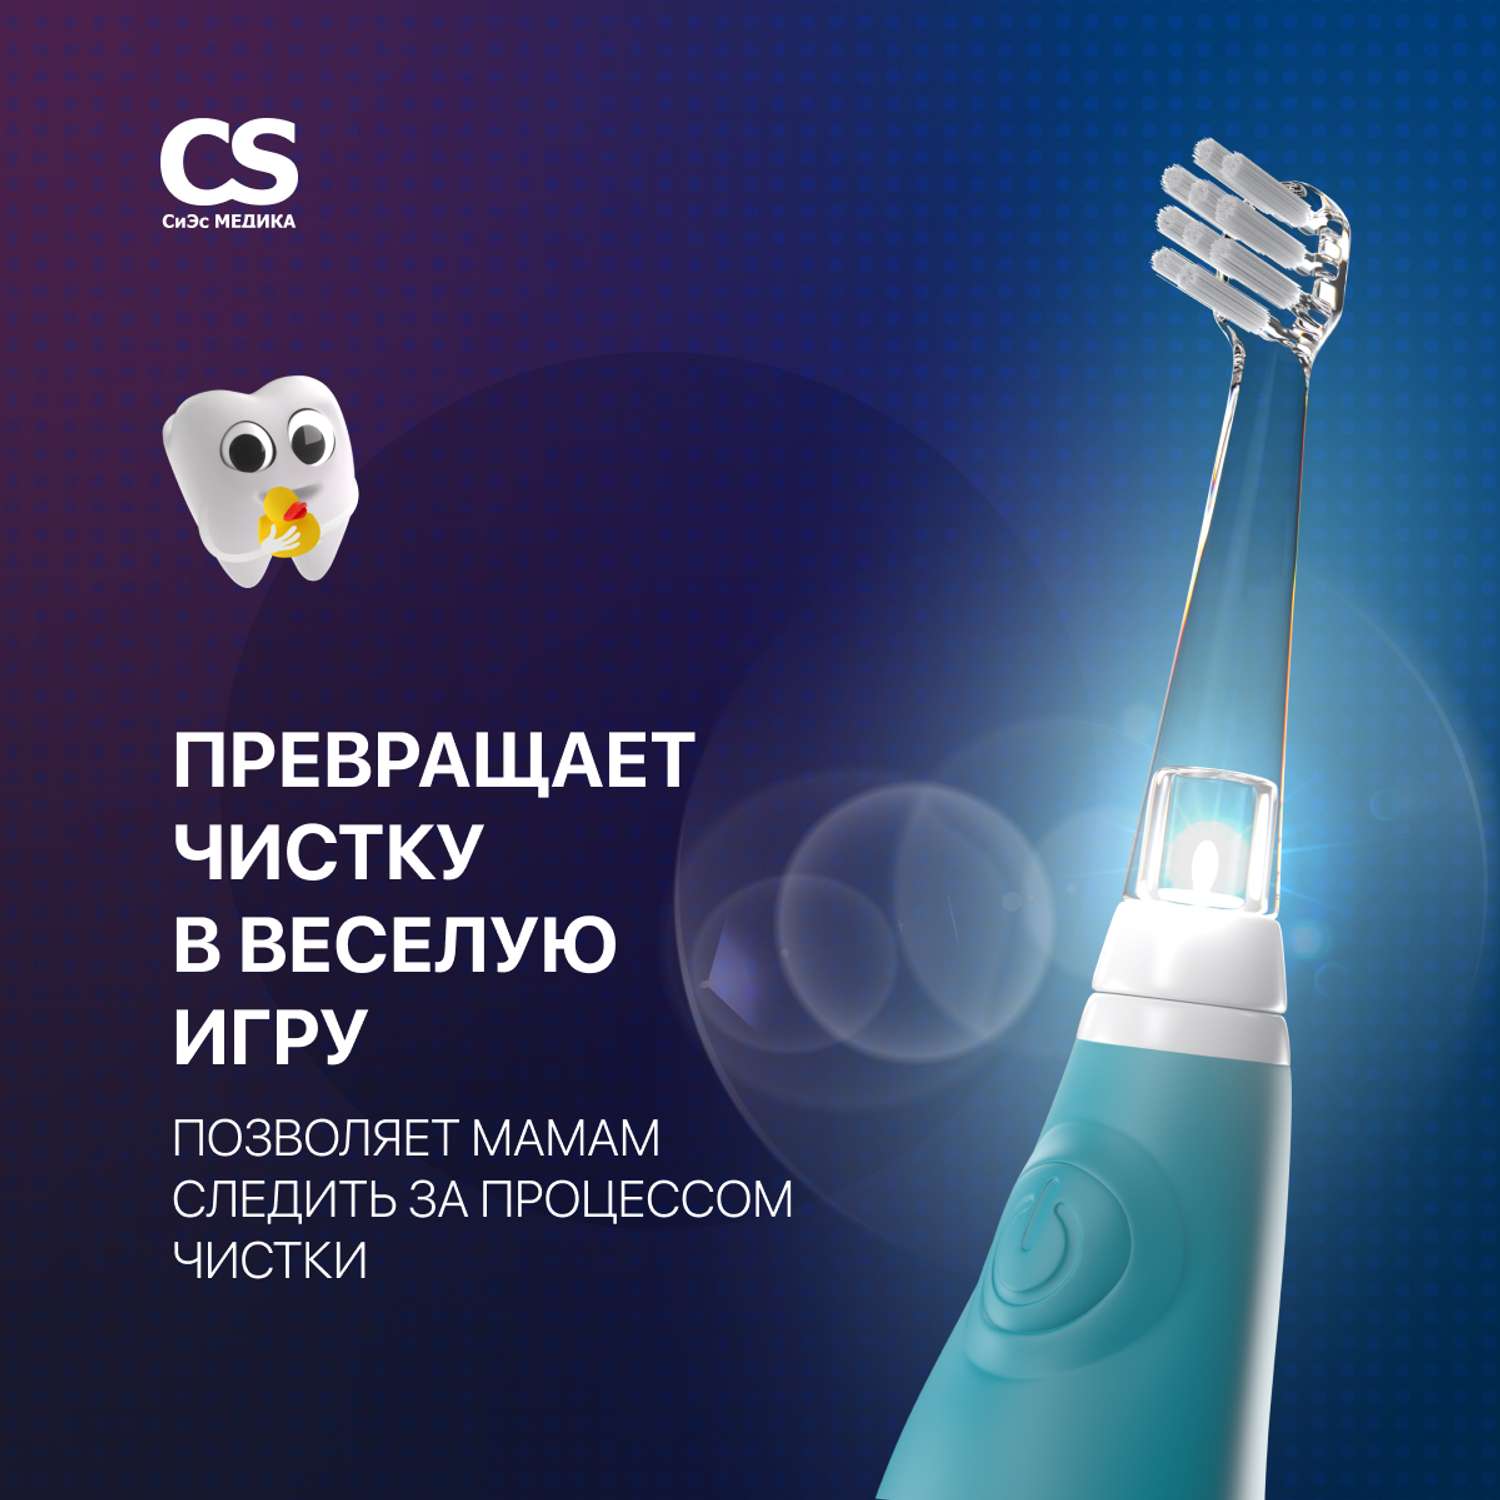 Электрическая зубная щетка CS MEDICA CS-561 Kids голубая - фото 2